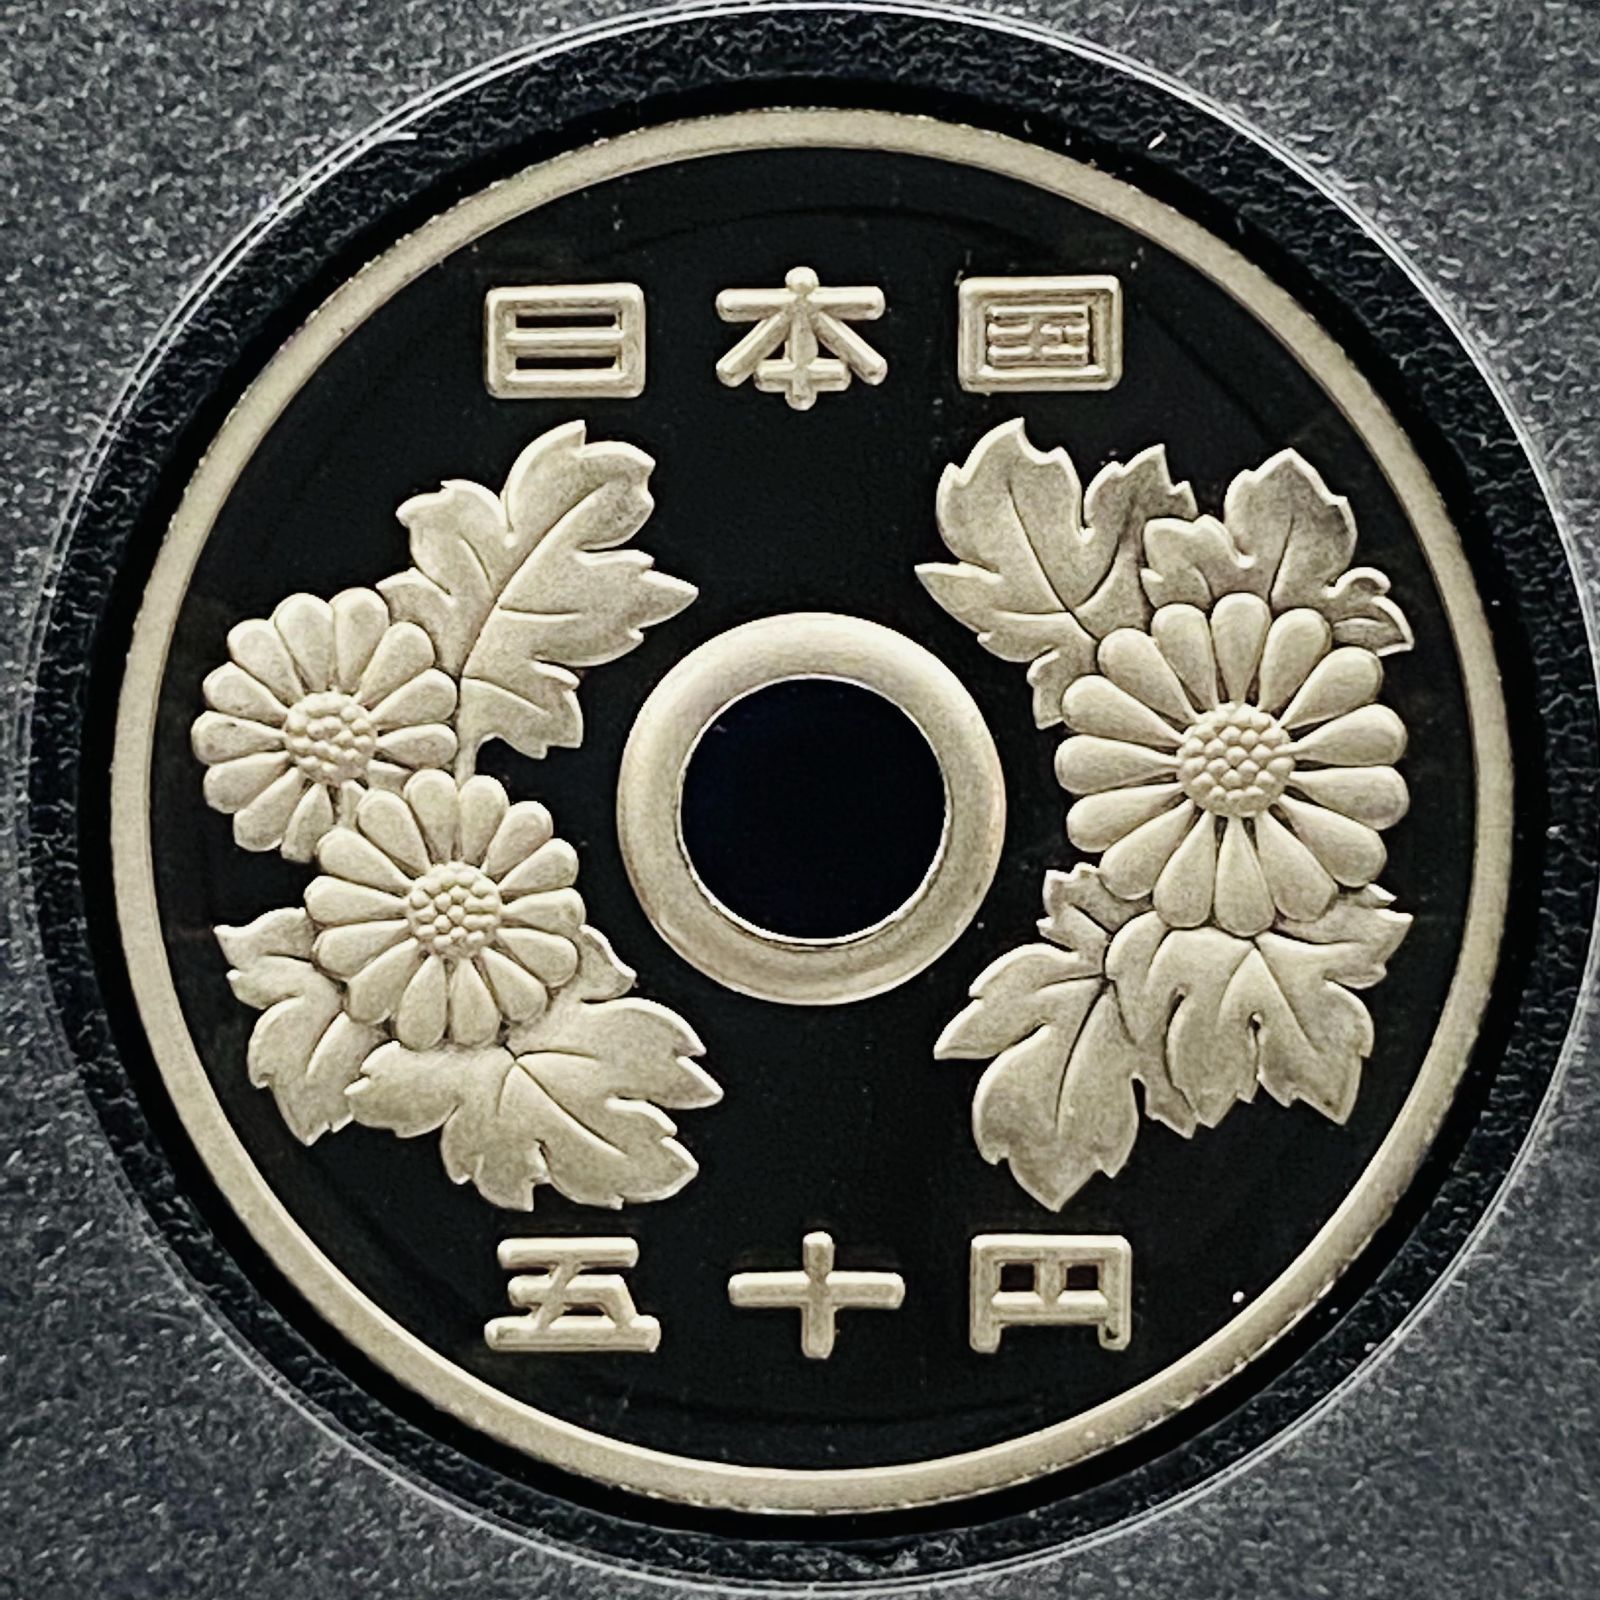 プルーフ貨幣セット 2021年 令和3年 五百円改鋳 額面666円 年